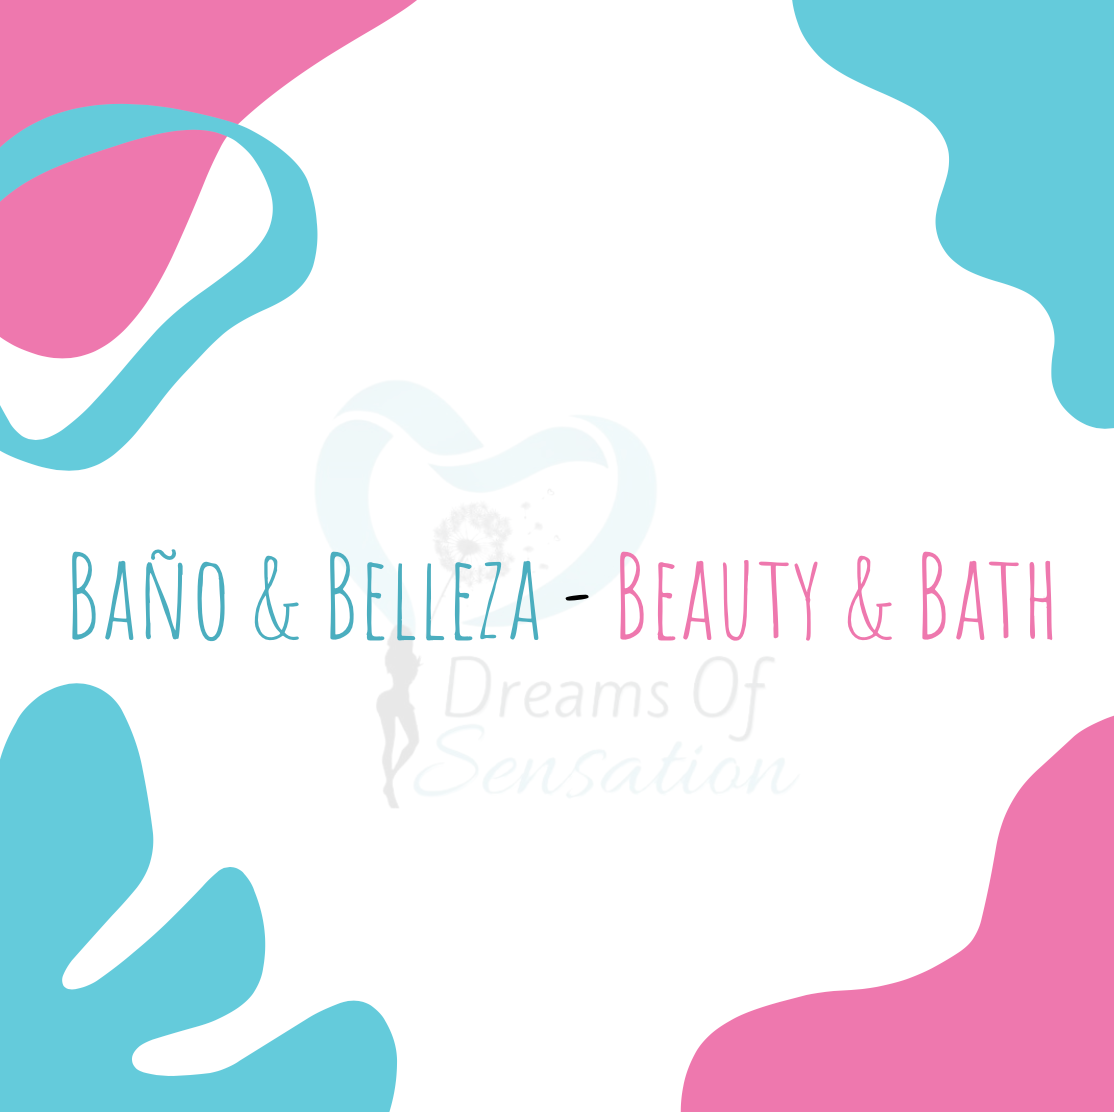 Baño & Belleza - Beauty & Bath